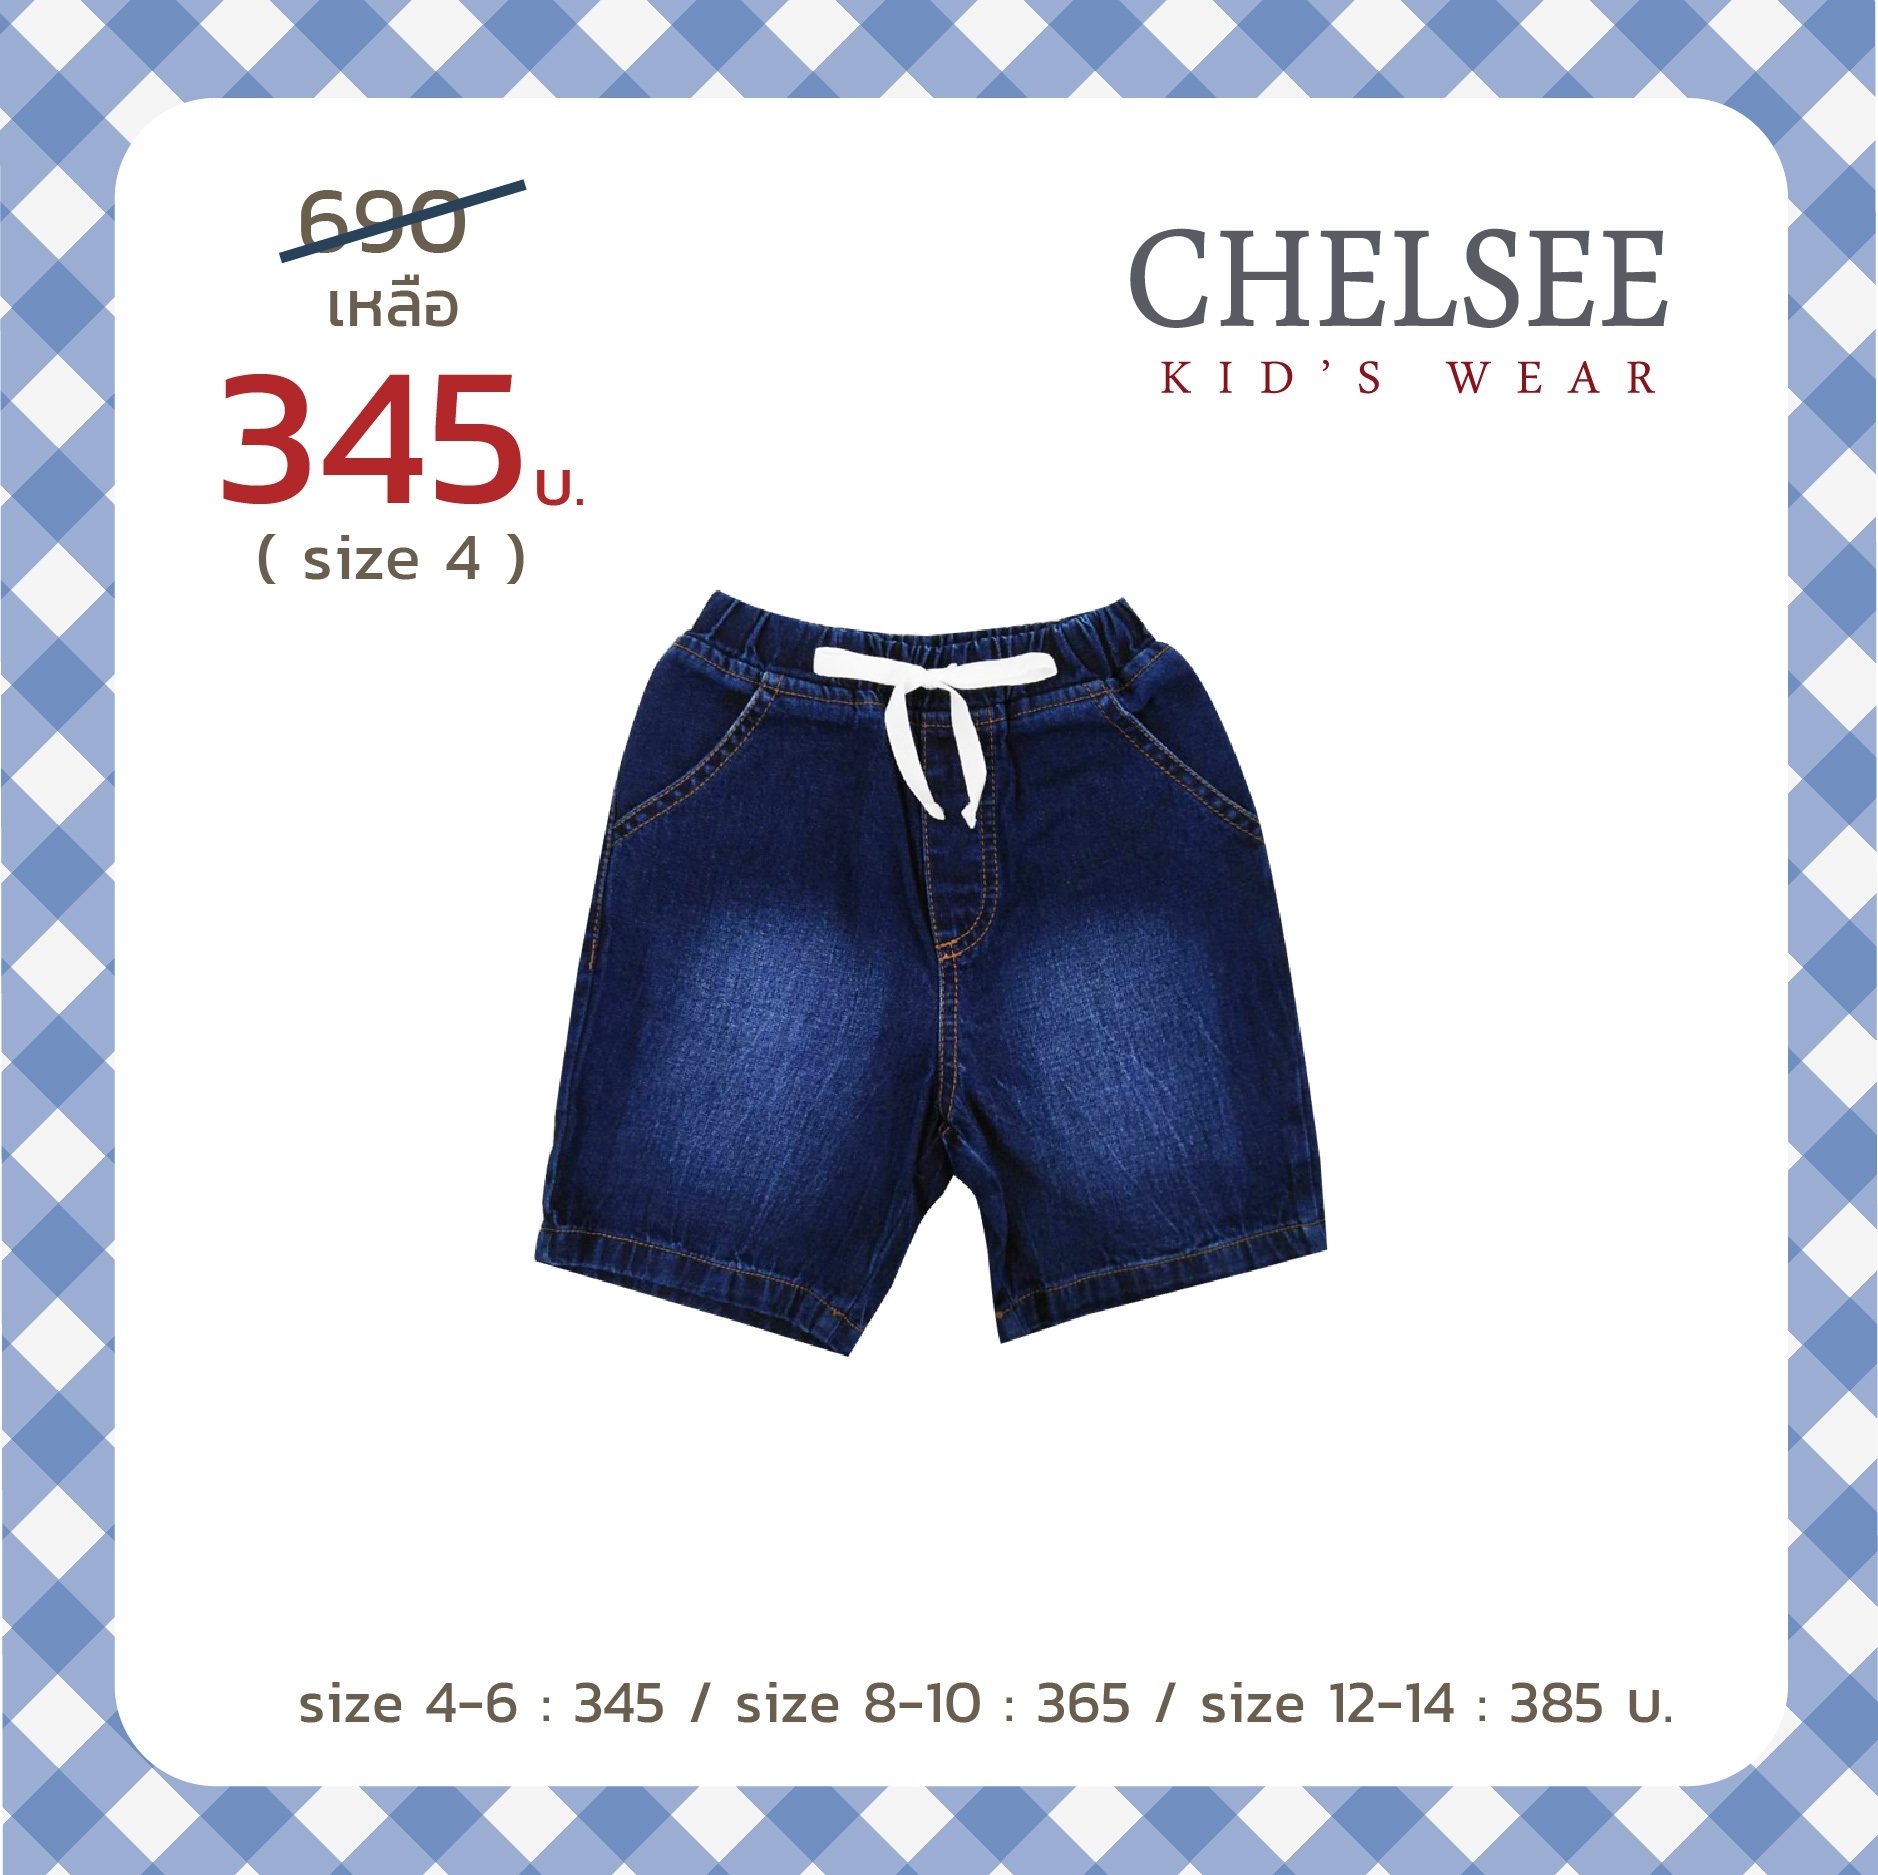 Chelsee กางเกงยีนส์ขาสั้น เด็กชาย ผ้านุ่ม ราคาสบายกระเป๋า งานห้างมาตรฐานการผลิตในไทย